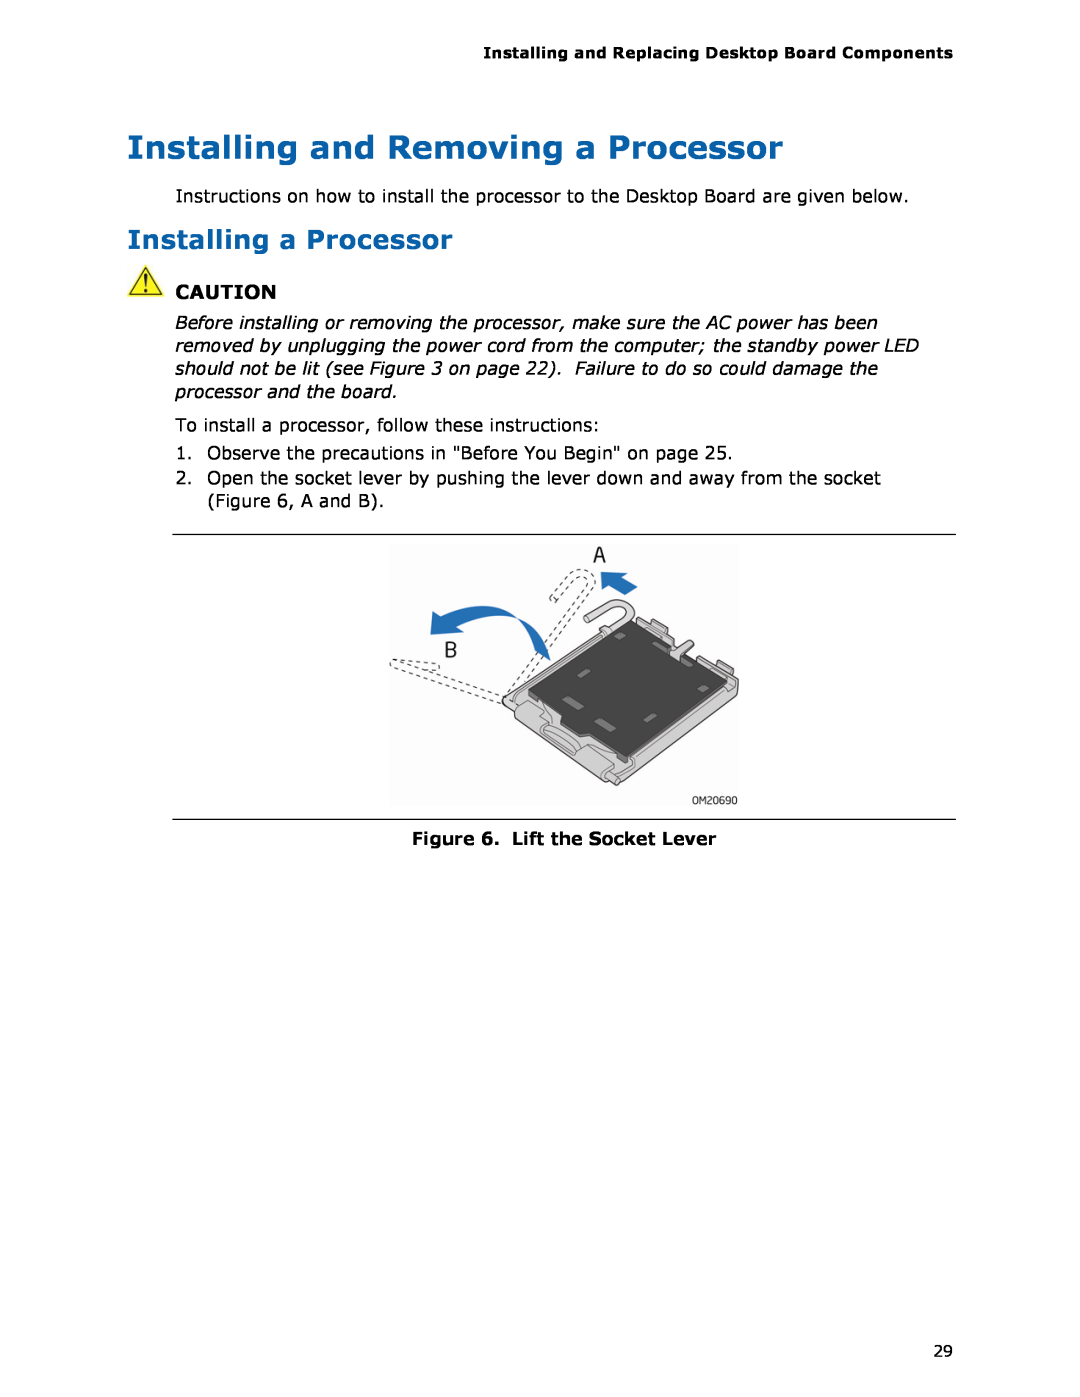 Intel DG35EC, Intel Desktop Board manual Installing and Removing a Processor, Installing a Processor, Lift the Socket Lever 